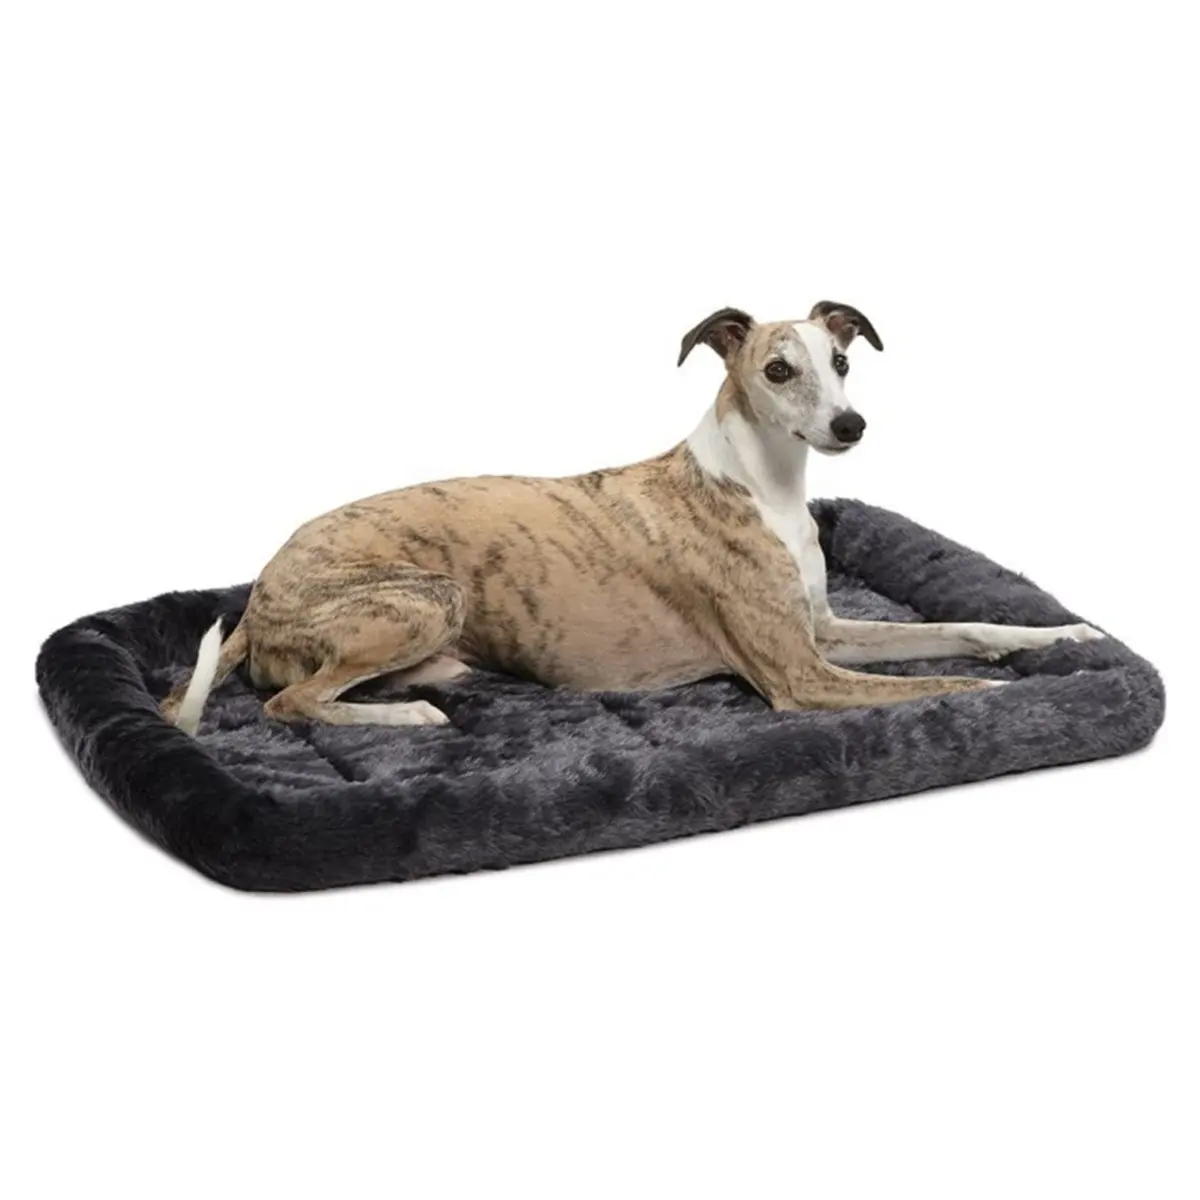 Cama cinza de 36l-polegadas ou cama de gato, cama confortável para cachorros e gatos de estimação, máquina de lavar fácil